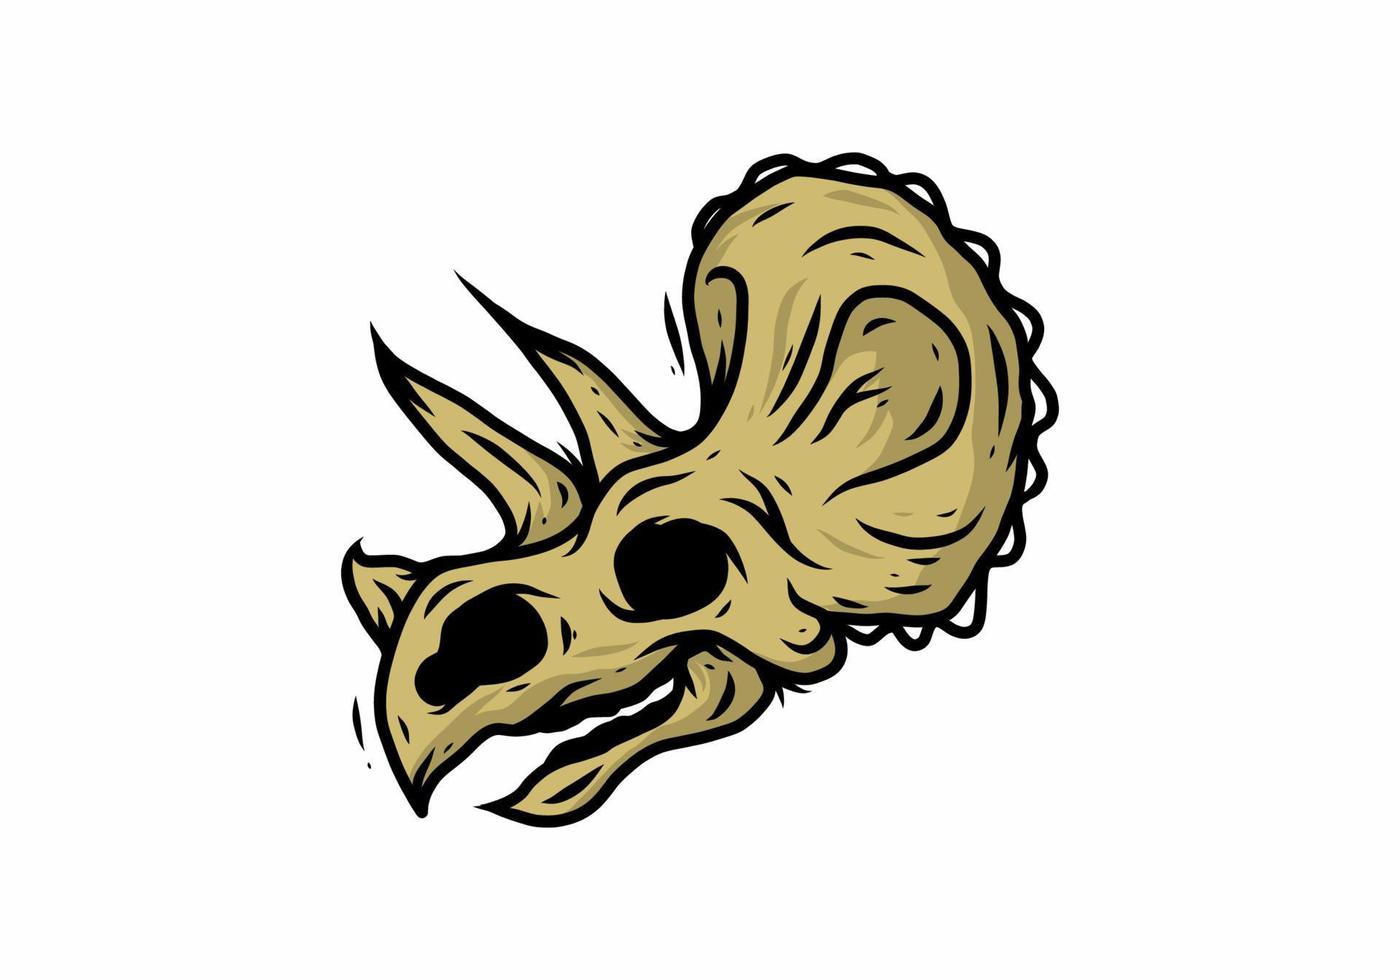 colore oro dell'illustrazione della testa dello scheletro di dinosauro vettore